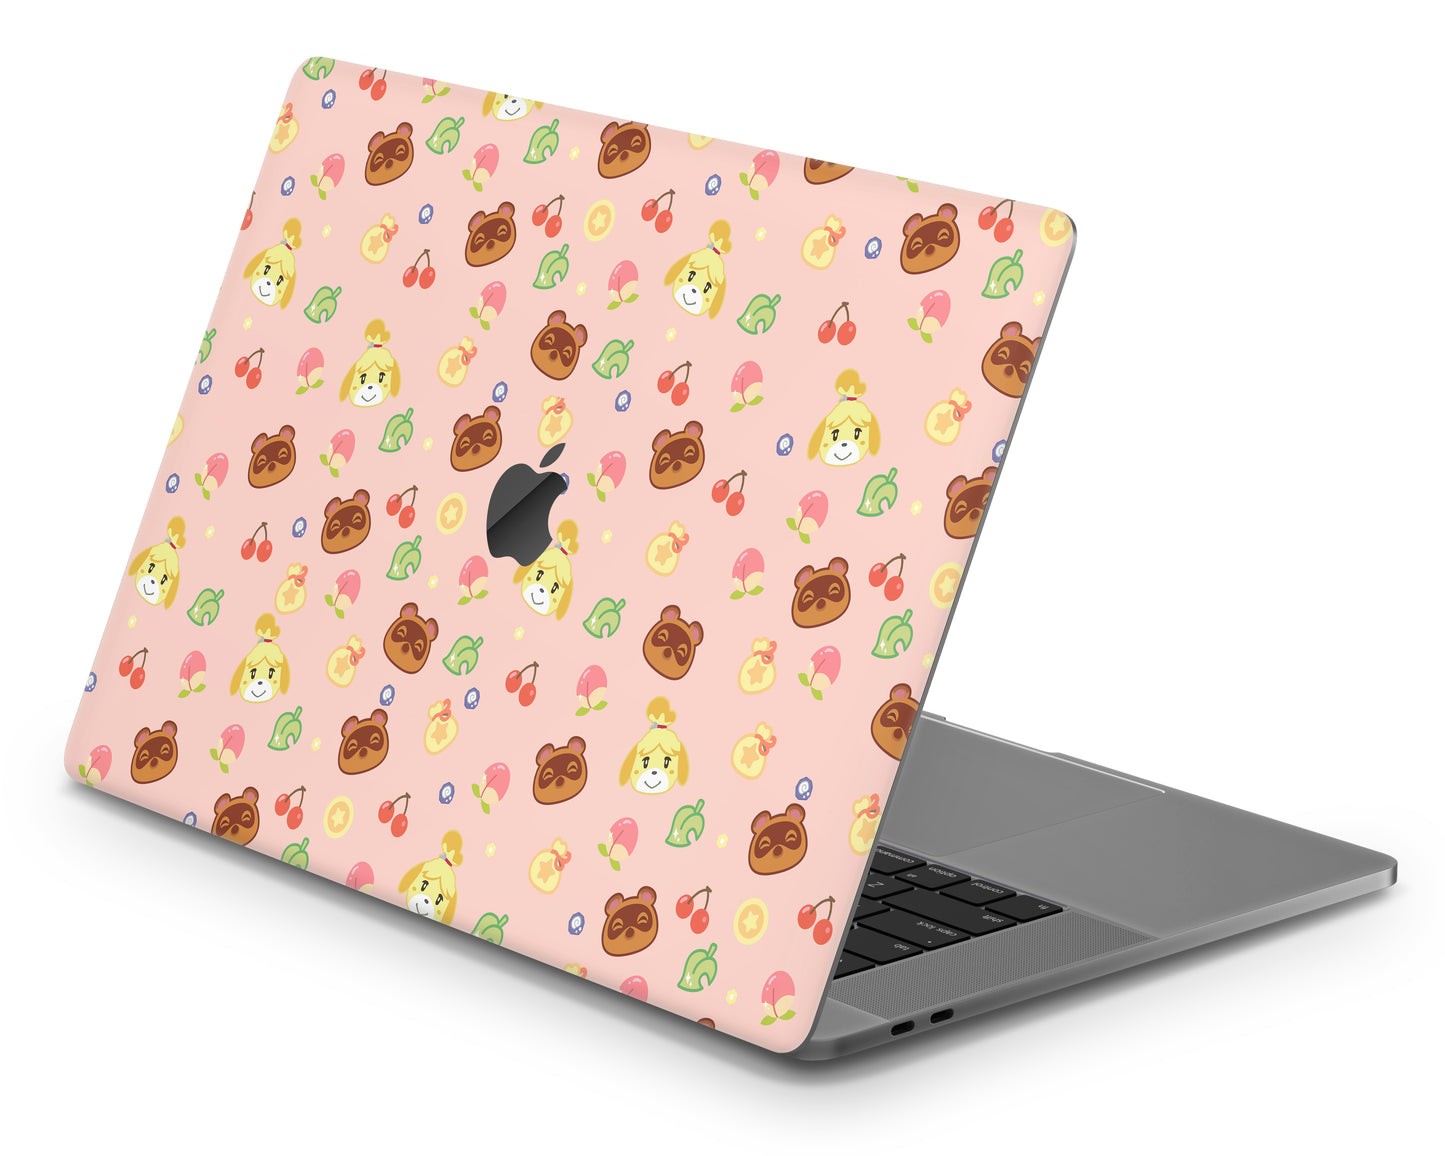 Cute Animal Crossing Pattern MacBook Skin